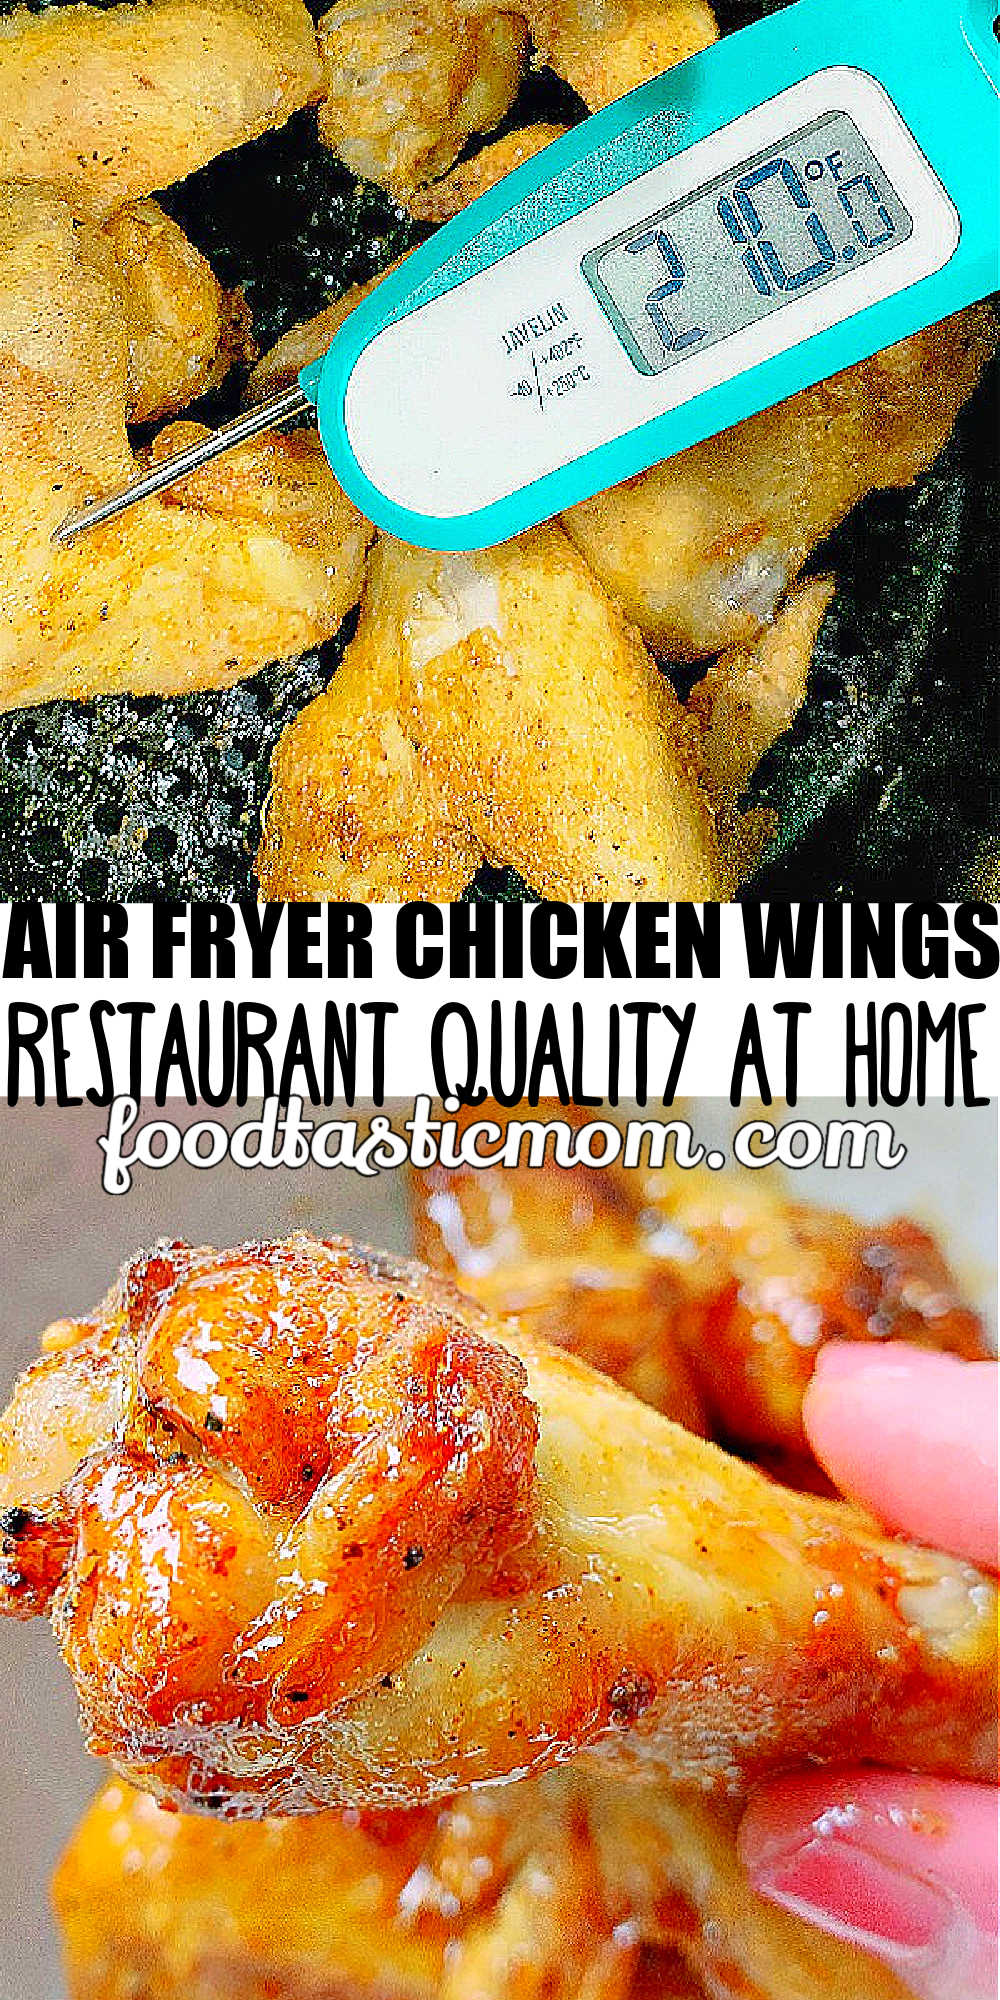 Air Fryer Chicken Wings | Foodtastic Mom #airfryerrecipes #airfryerchickenwings #chickenwingsinairfryer #chickenwings #chickenwingrecipes via @foodtasticmom